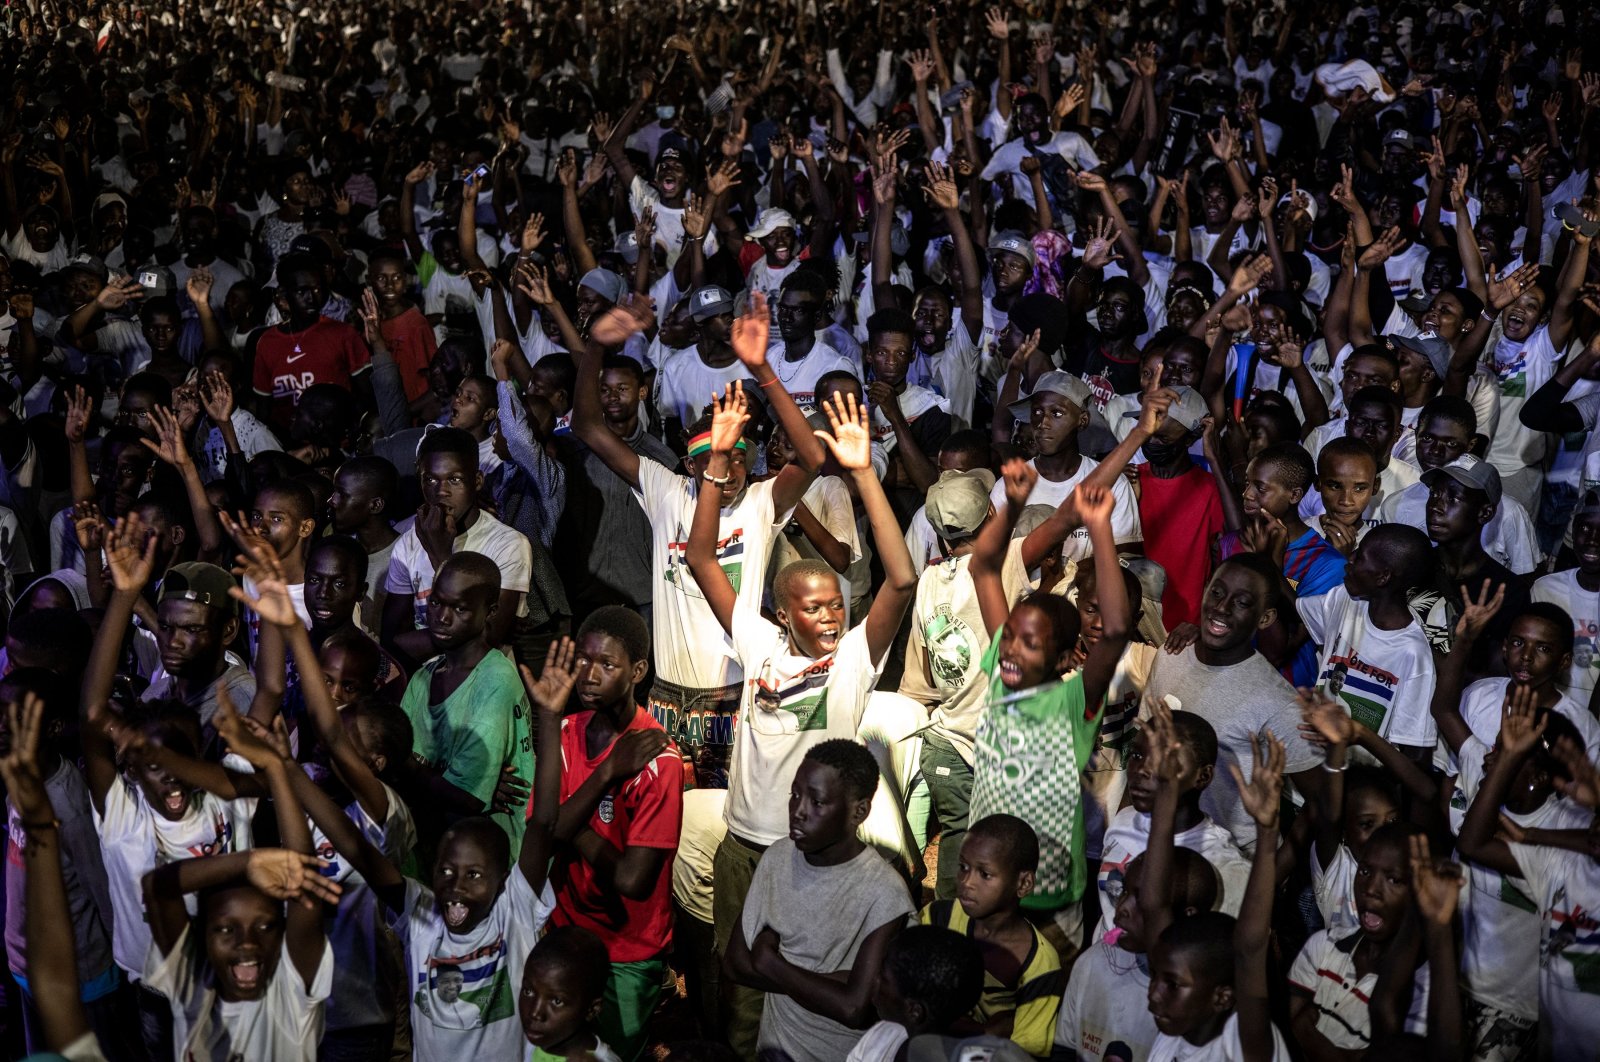 Pemilihan Gambia merupakan kemenangan bagi demokrasi, kata UE